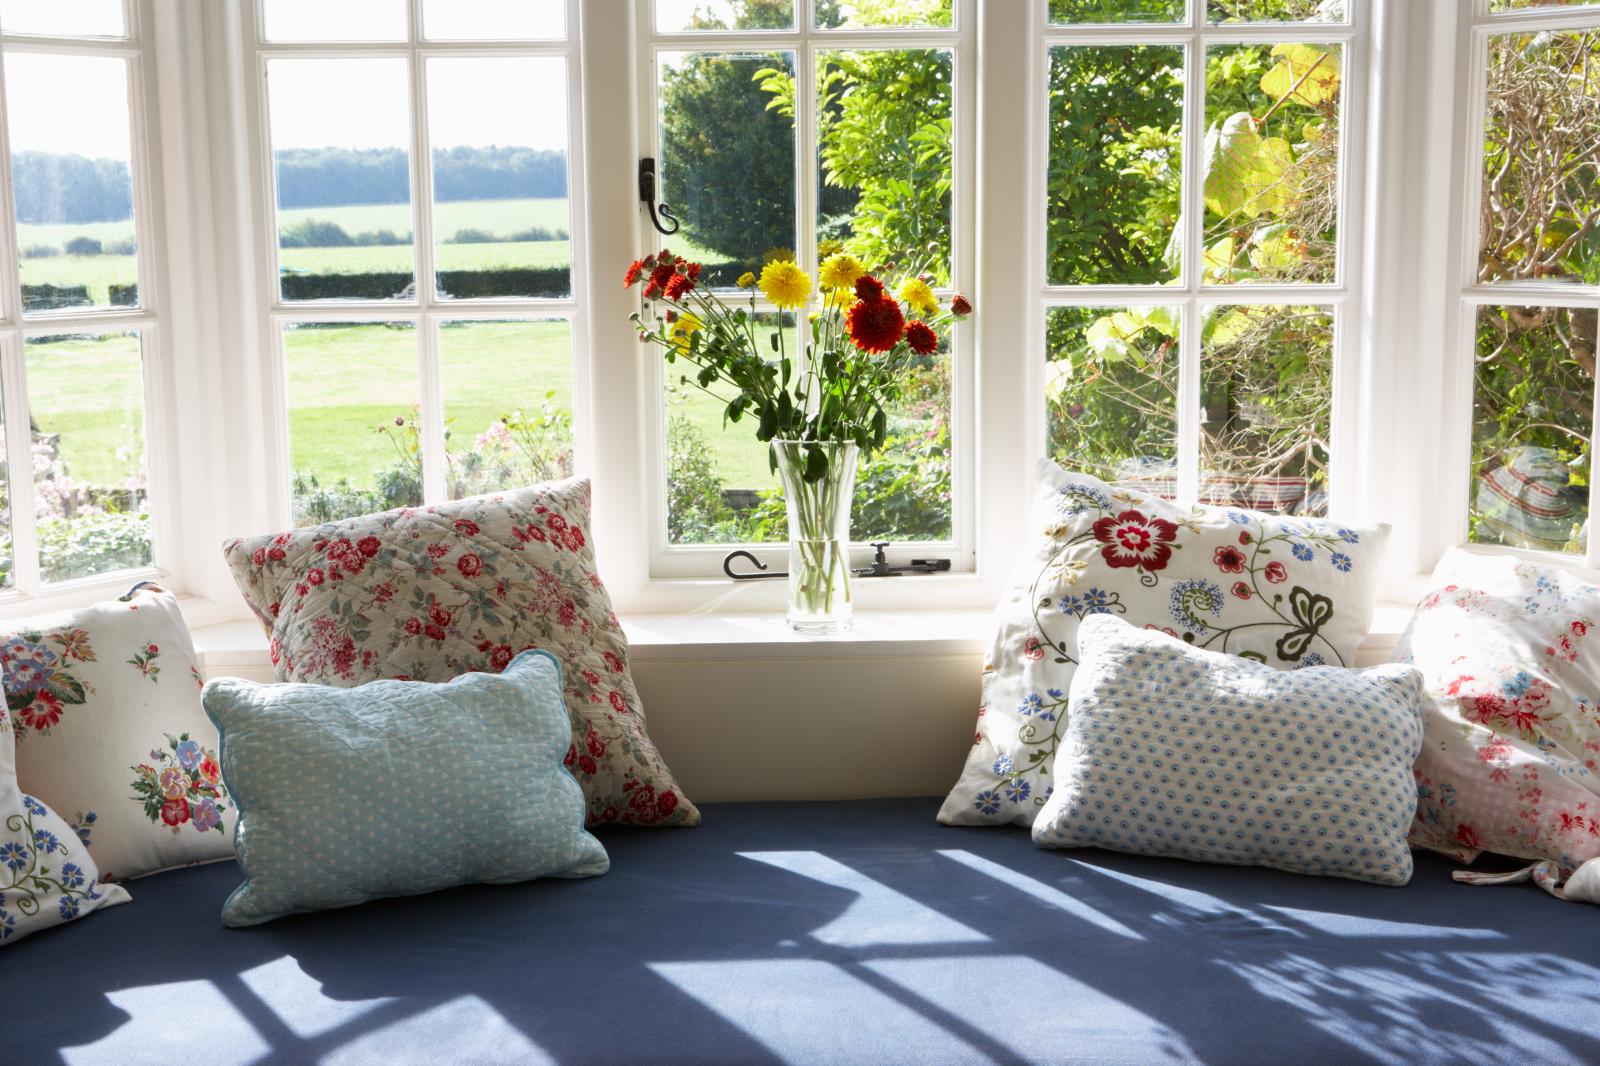 Ghế sofa có nhiều gối ôm đặt cạnh khung cửa sổ kính trắng nhìn ra bãi cõ, lọ hoa nhiều màu.